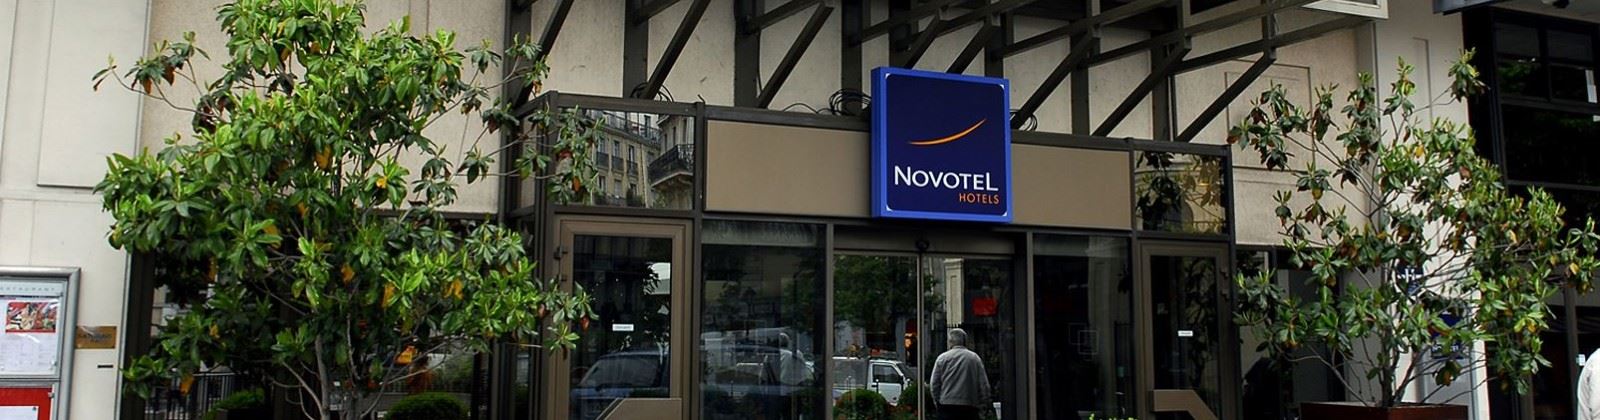 OLEVENE Image - novotel-paris-les-halles-olevene-hotel-restaurant-booking-congres-